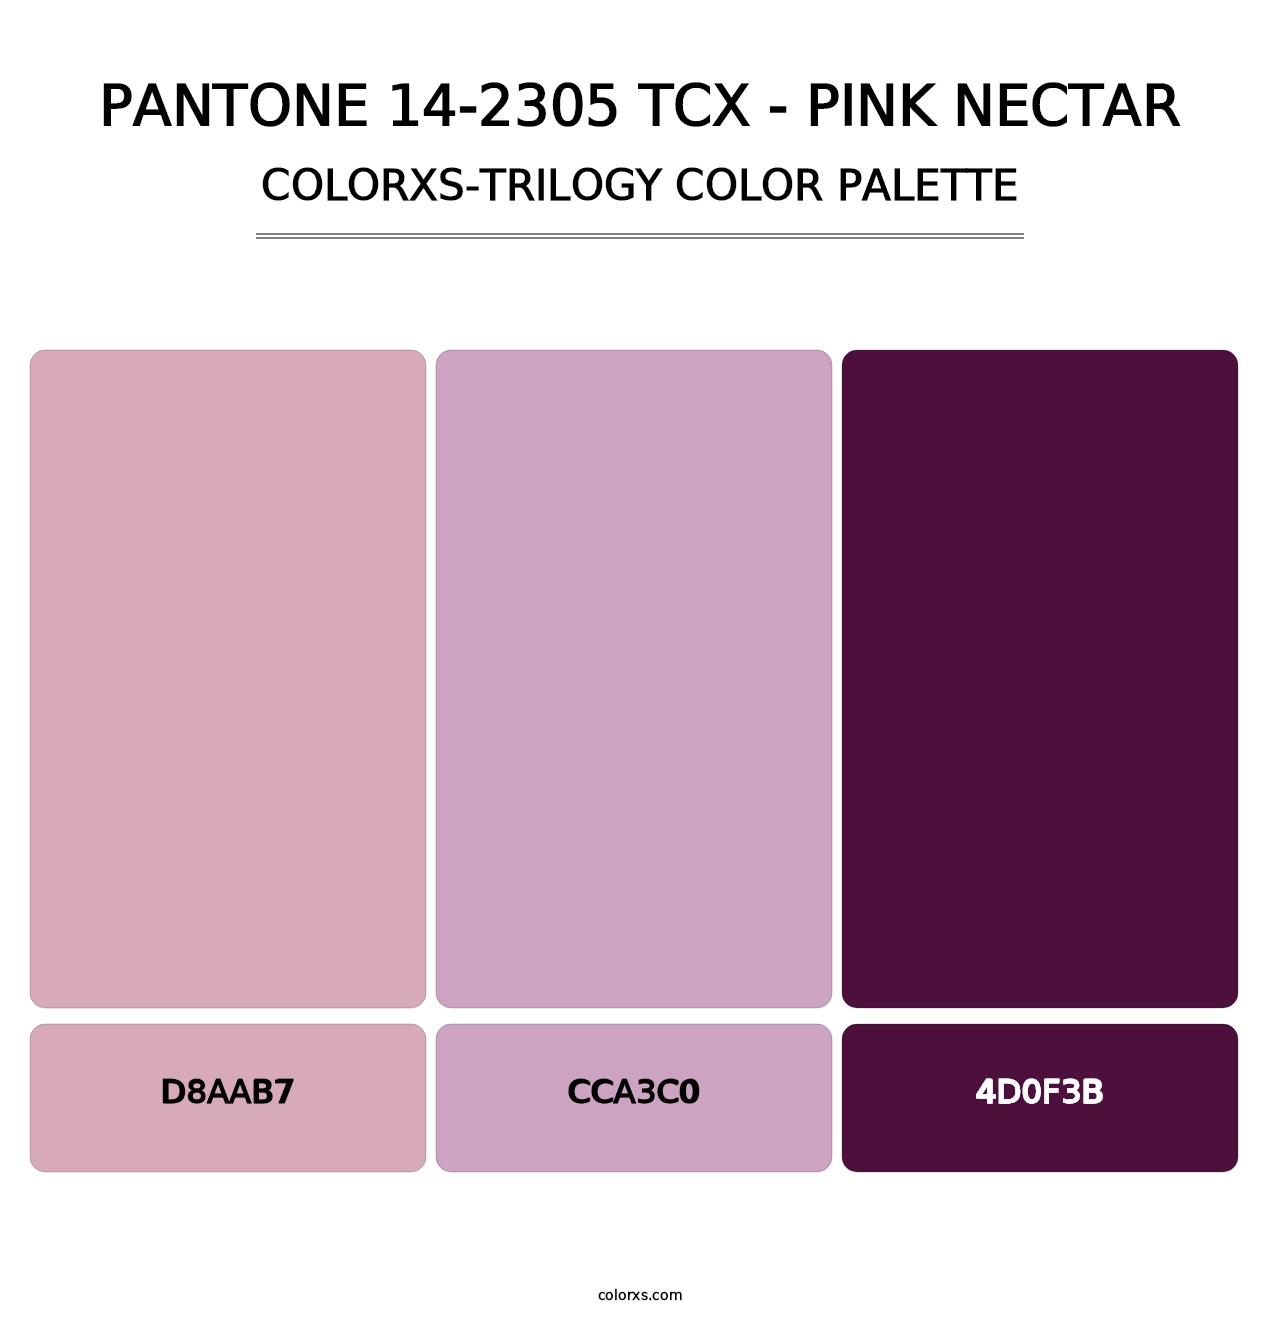 PANTONE 14-2305 TCX - Pink Nectar - Colorxs Trilogy Palette